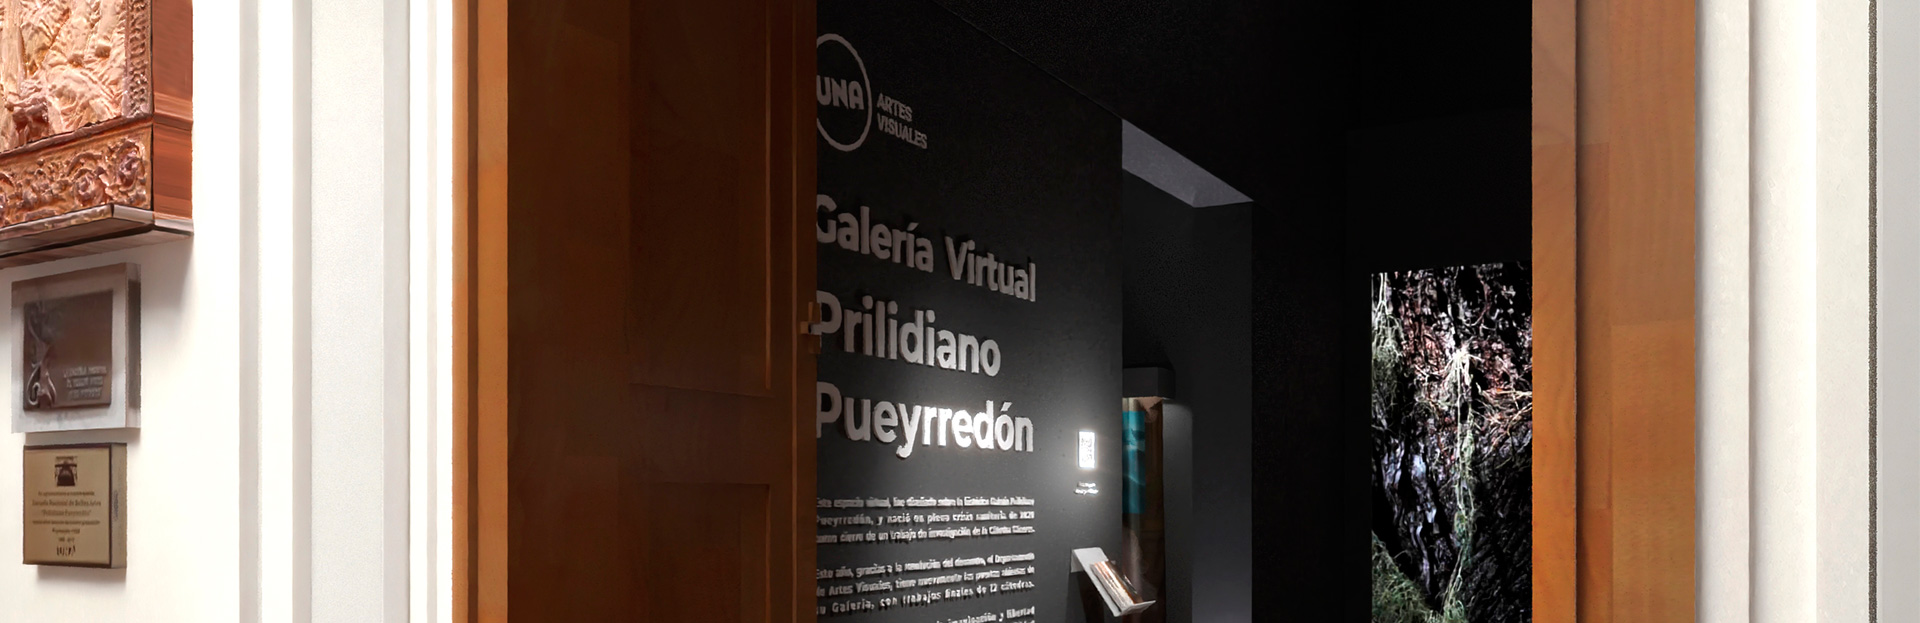 Inaugura la Galería Virtual Prilidiano Pueyrredón